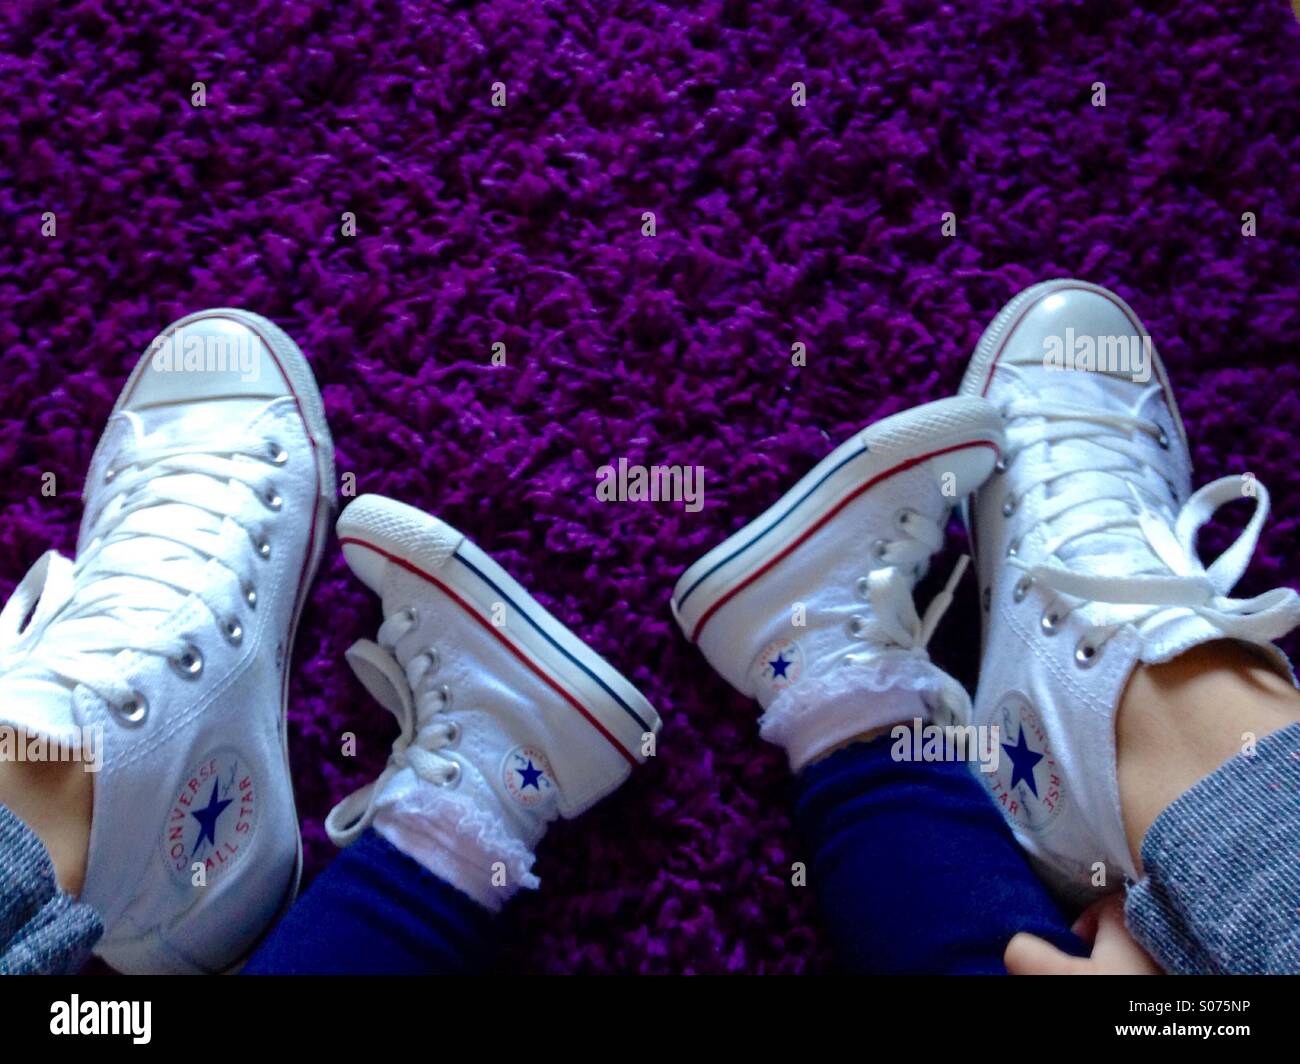 Mamma e figlia converse all star scarpe Foto stock - Alamy